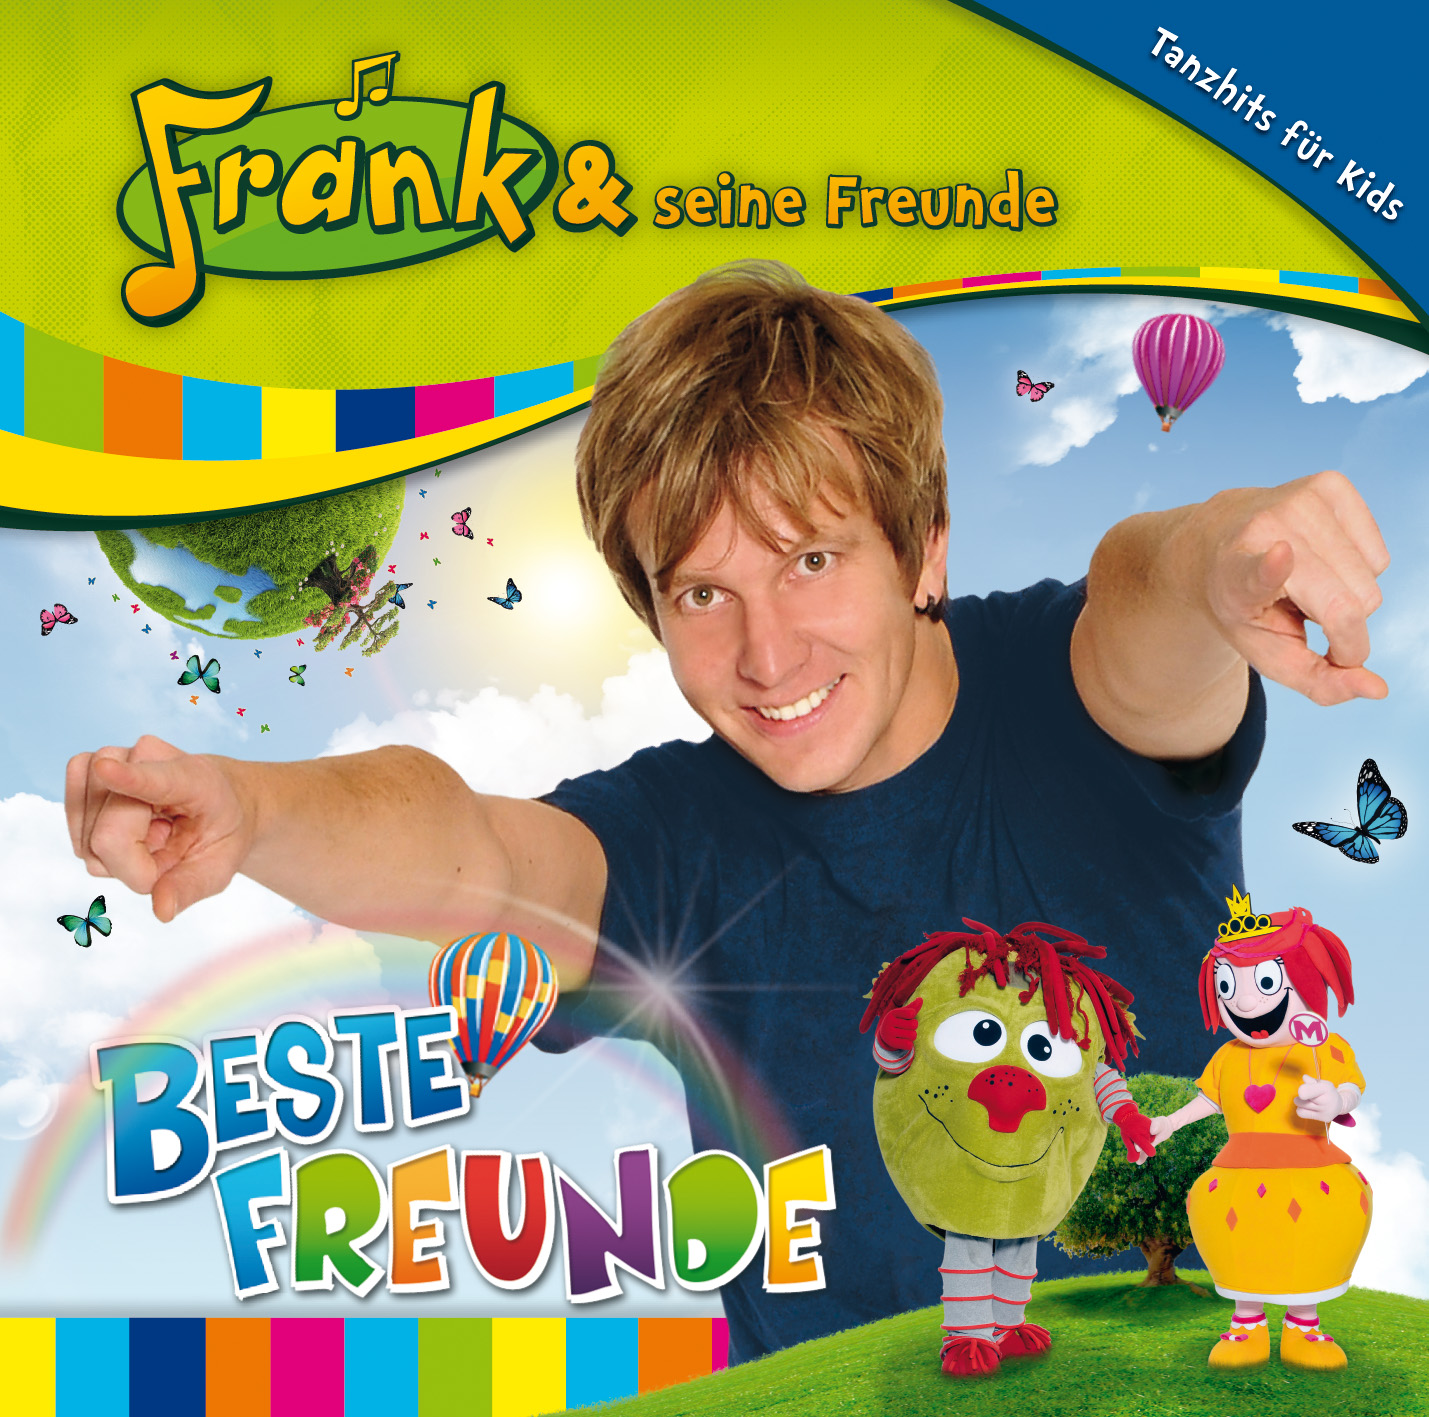 Frank & seine Freunde : Beste Freunde